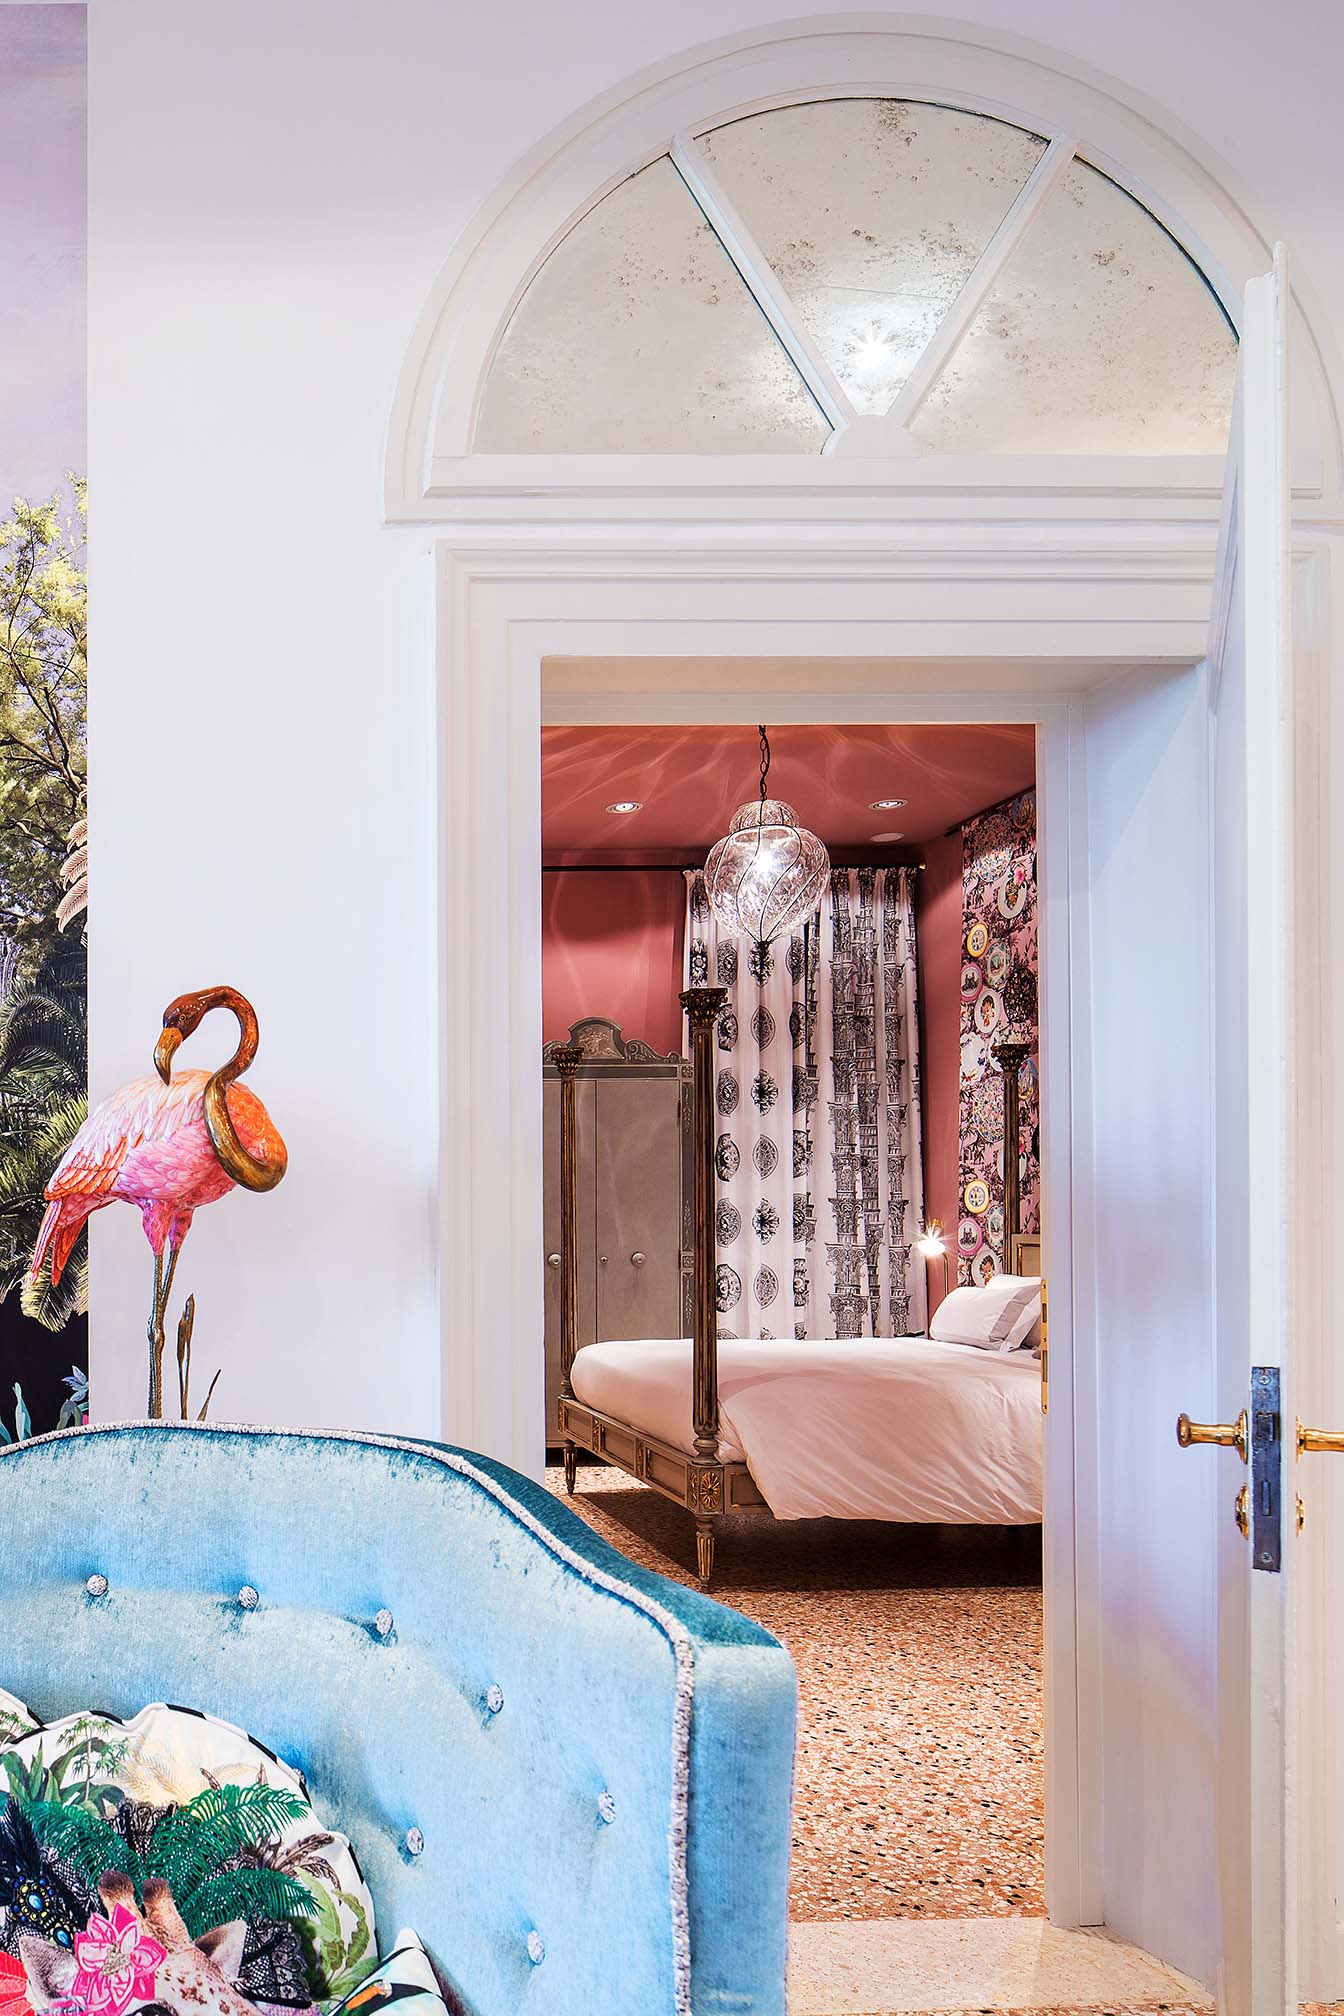 Blick in ein Hotelzimmer mit Lacroix Tapete von Designers Guild.